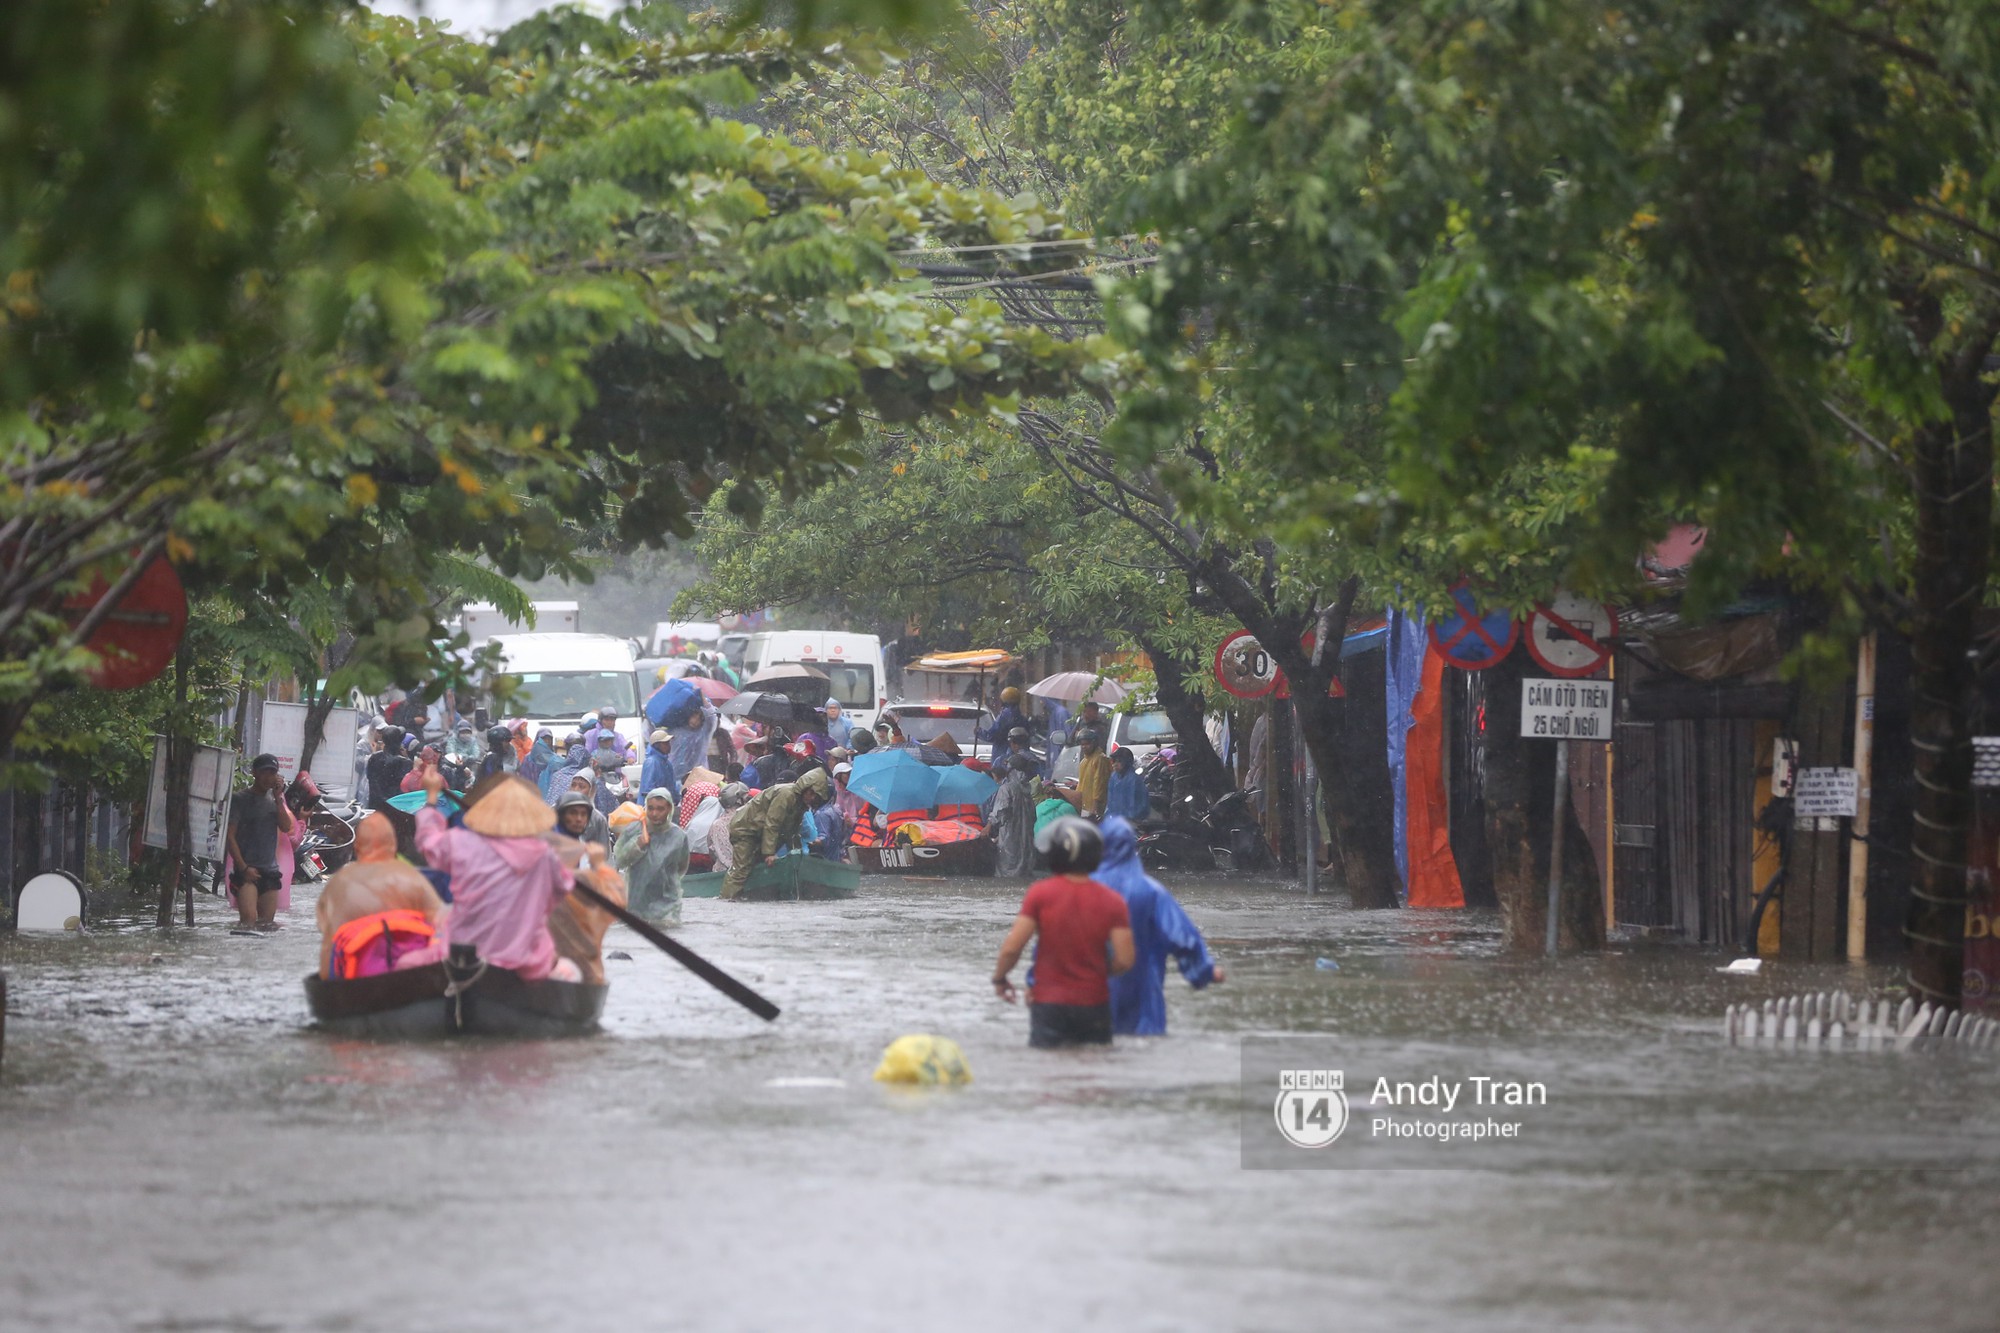 Chùm ảnh: Hội An nước ngập thành sông do ảnh hưởng của bão, người dân và du khách chật vật dùng thuyền bè di chuyển - Ảnh 23.